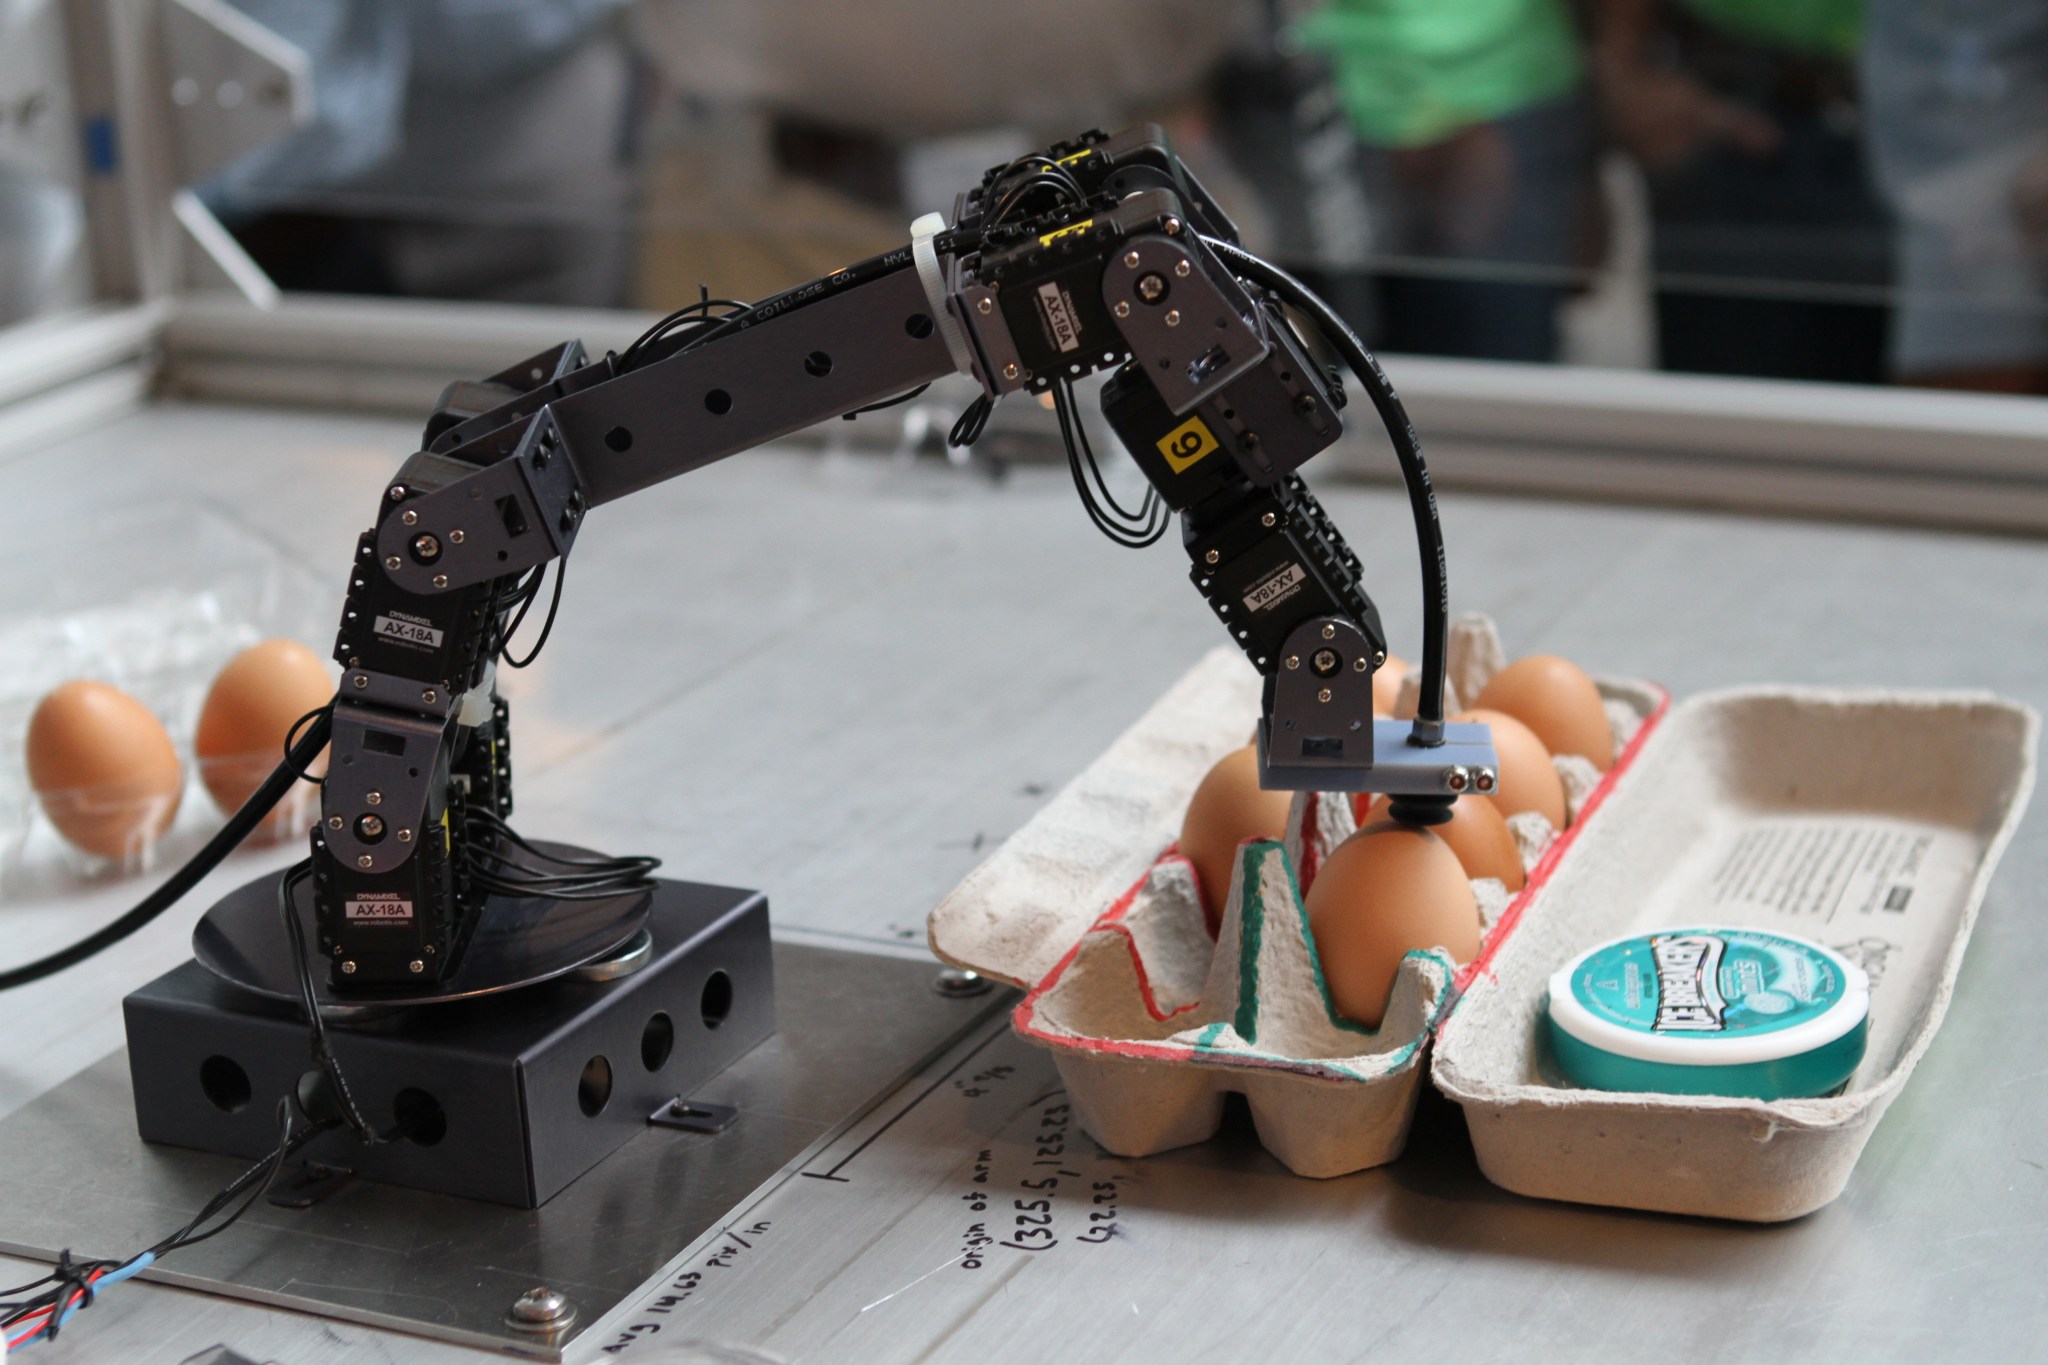  robotic arm and a carton of eggs